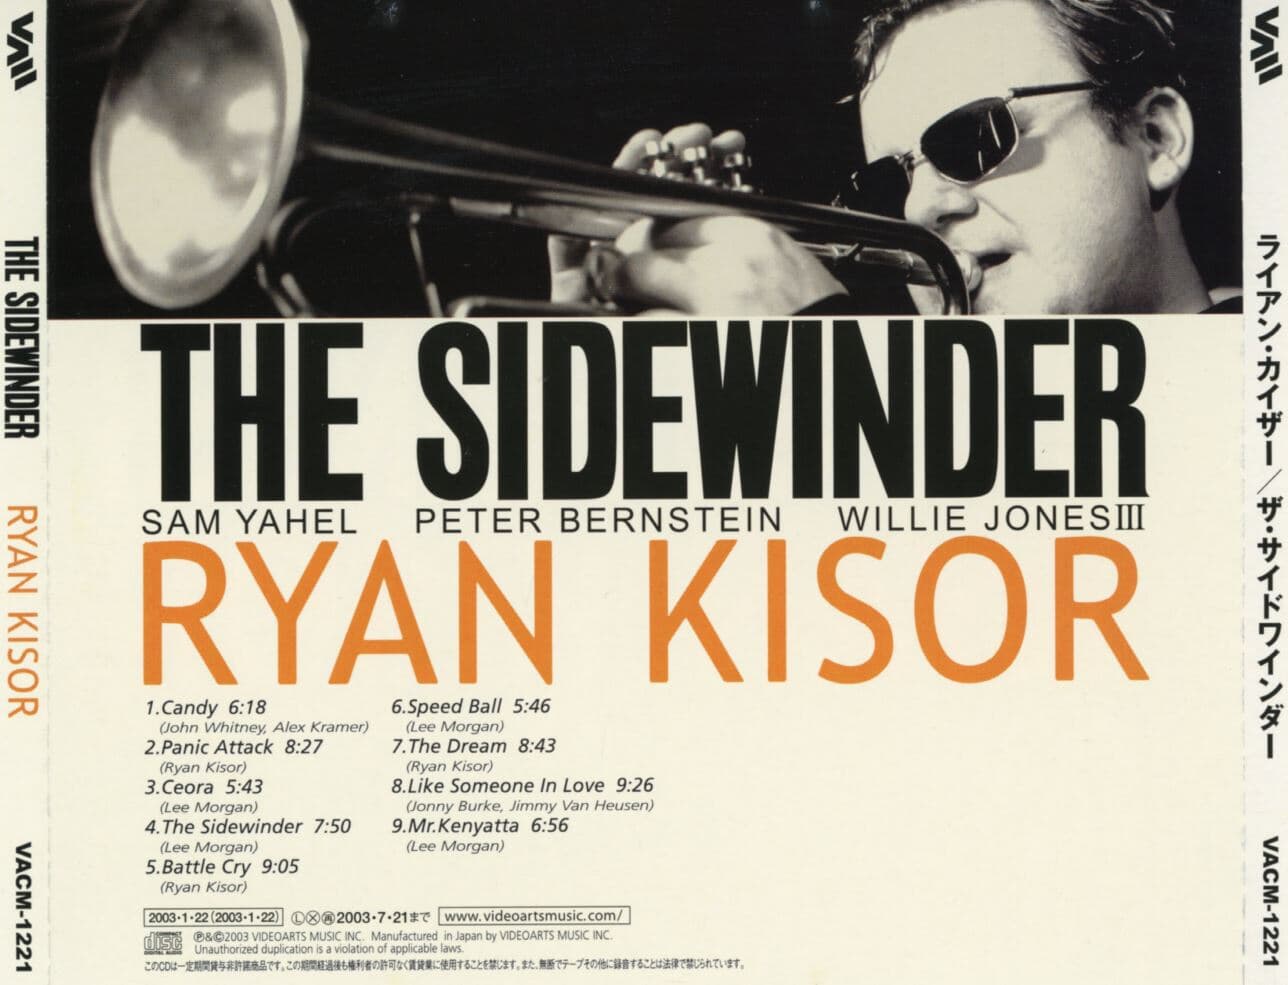 라이언 카이저 - Ryan Kisor - The Sidewinder [일본발매]